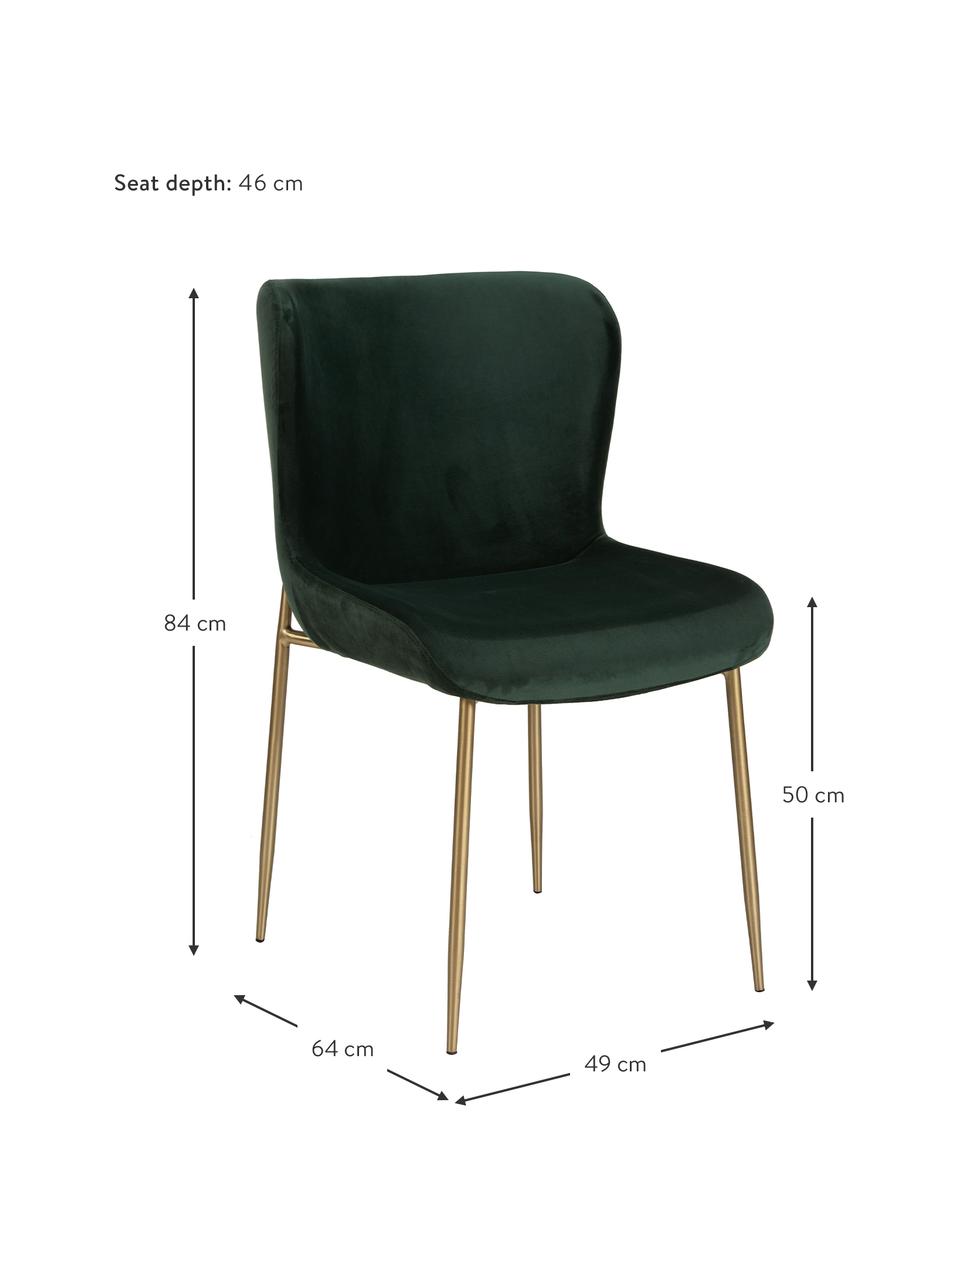 Krzesło tapicerowane z aksamitu Tess, Tapicerka: aksamit (poliester) Dzięk, Nogi: metal malowany proszkowo, Zielony aksamit, odcienie złotego, S 49 x W 84 cm